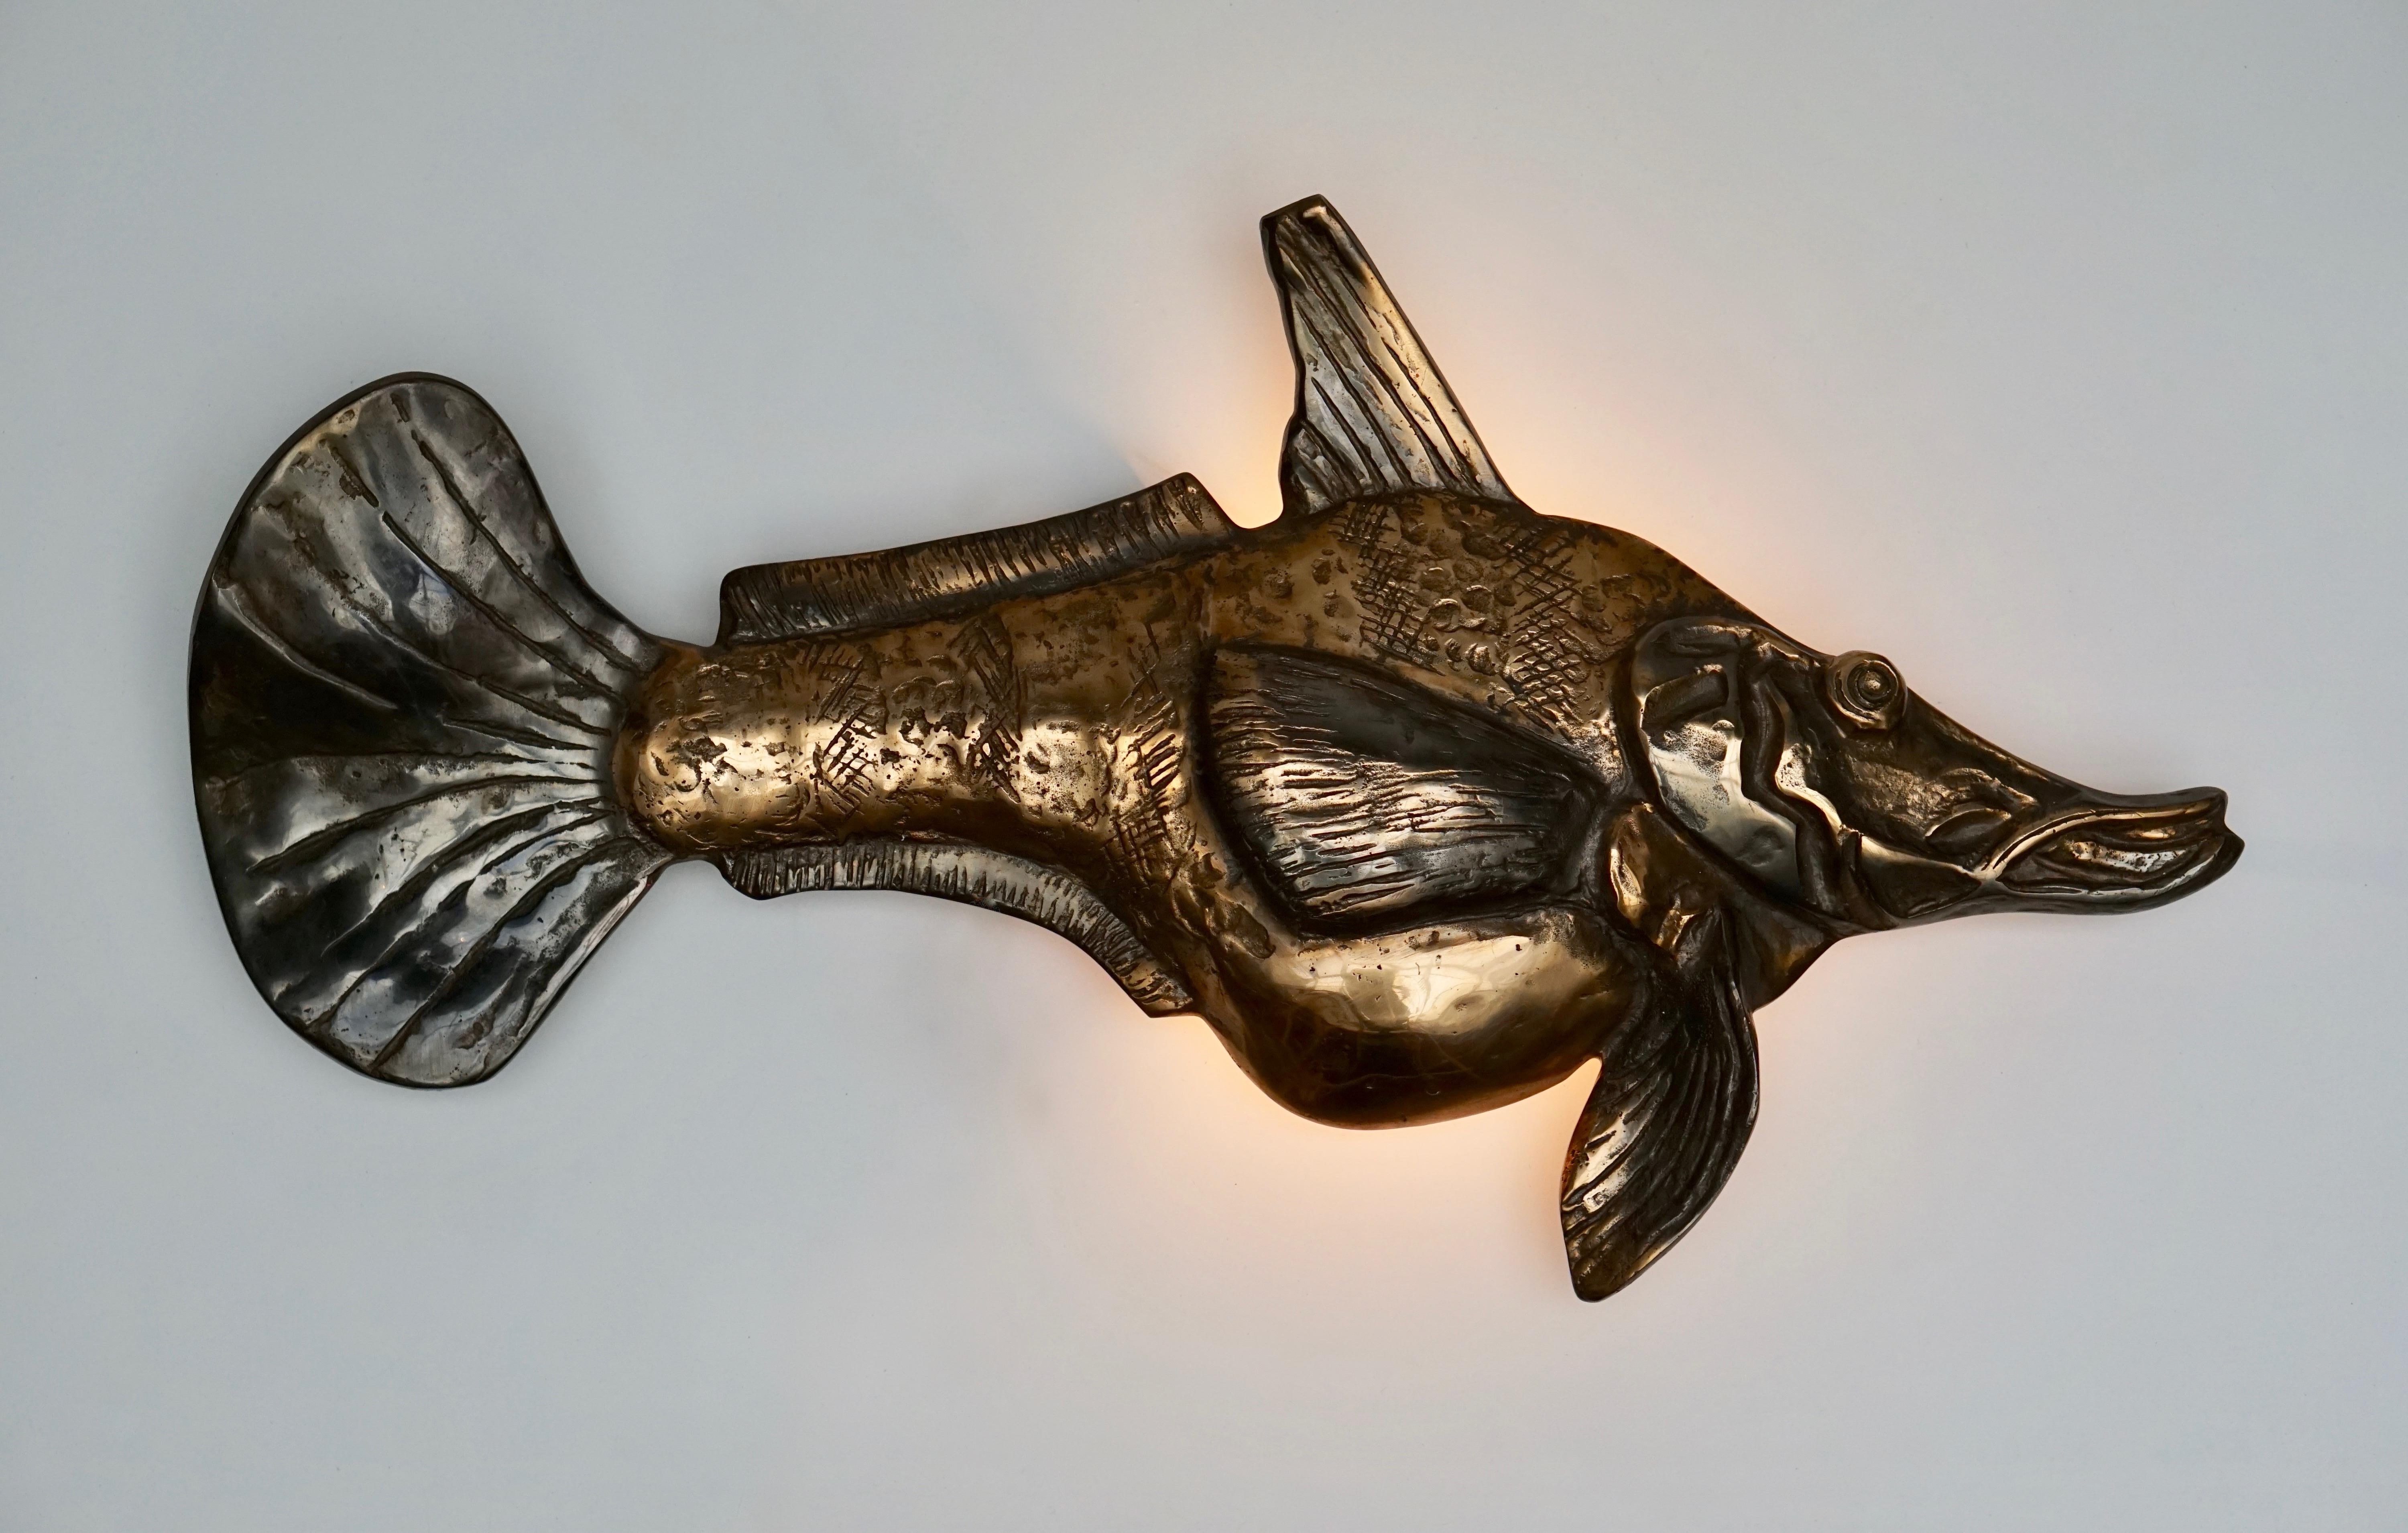 Wandleuchte aus Bronze in Form eines Fisches.
Maße: Breite 70 cm, Höhe 38 cm, Tiefe 10 cm.
Gewicht 6 kg.
Eine E14-Glühbirne.